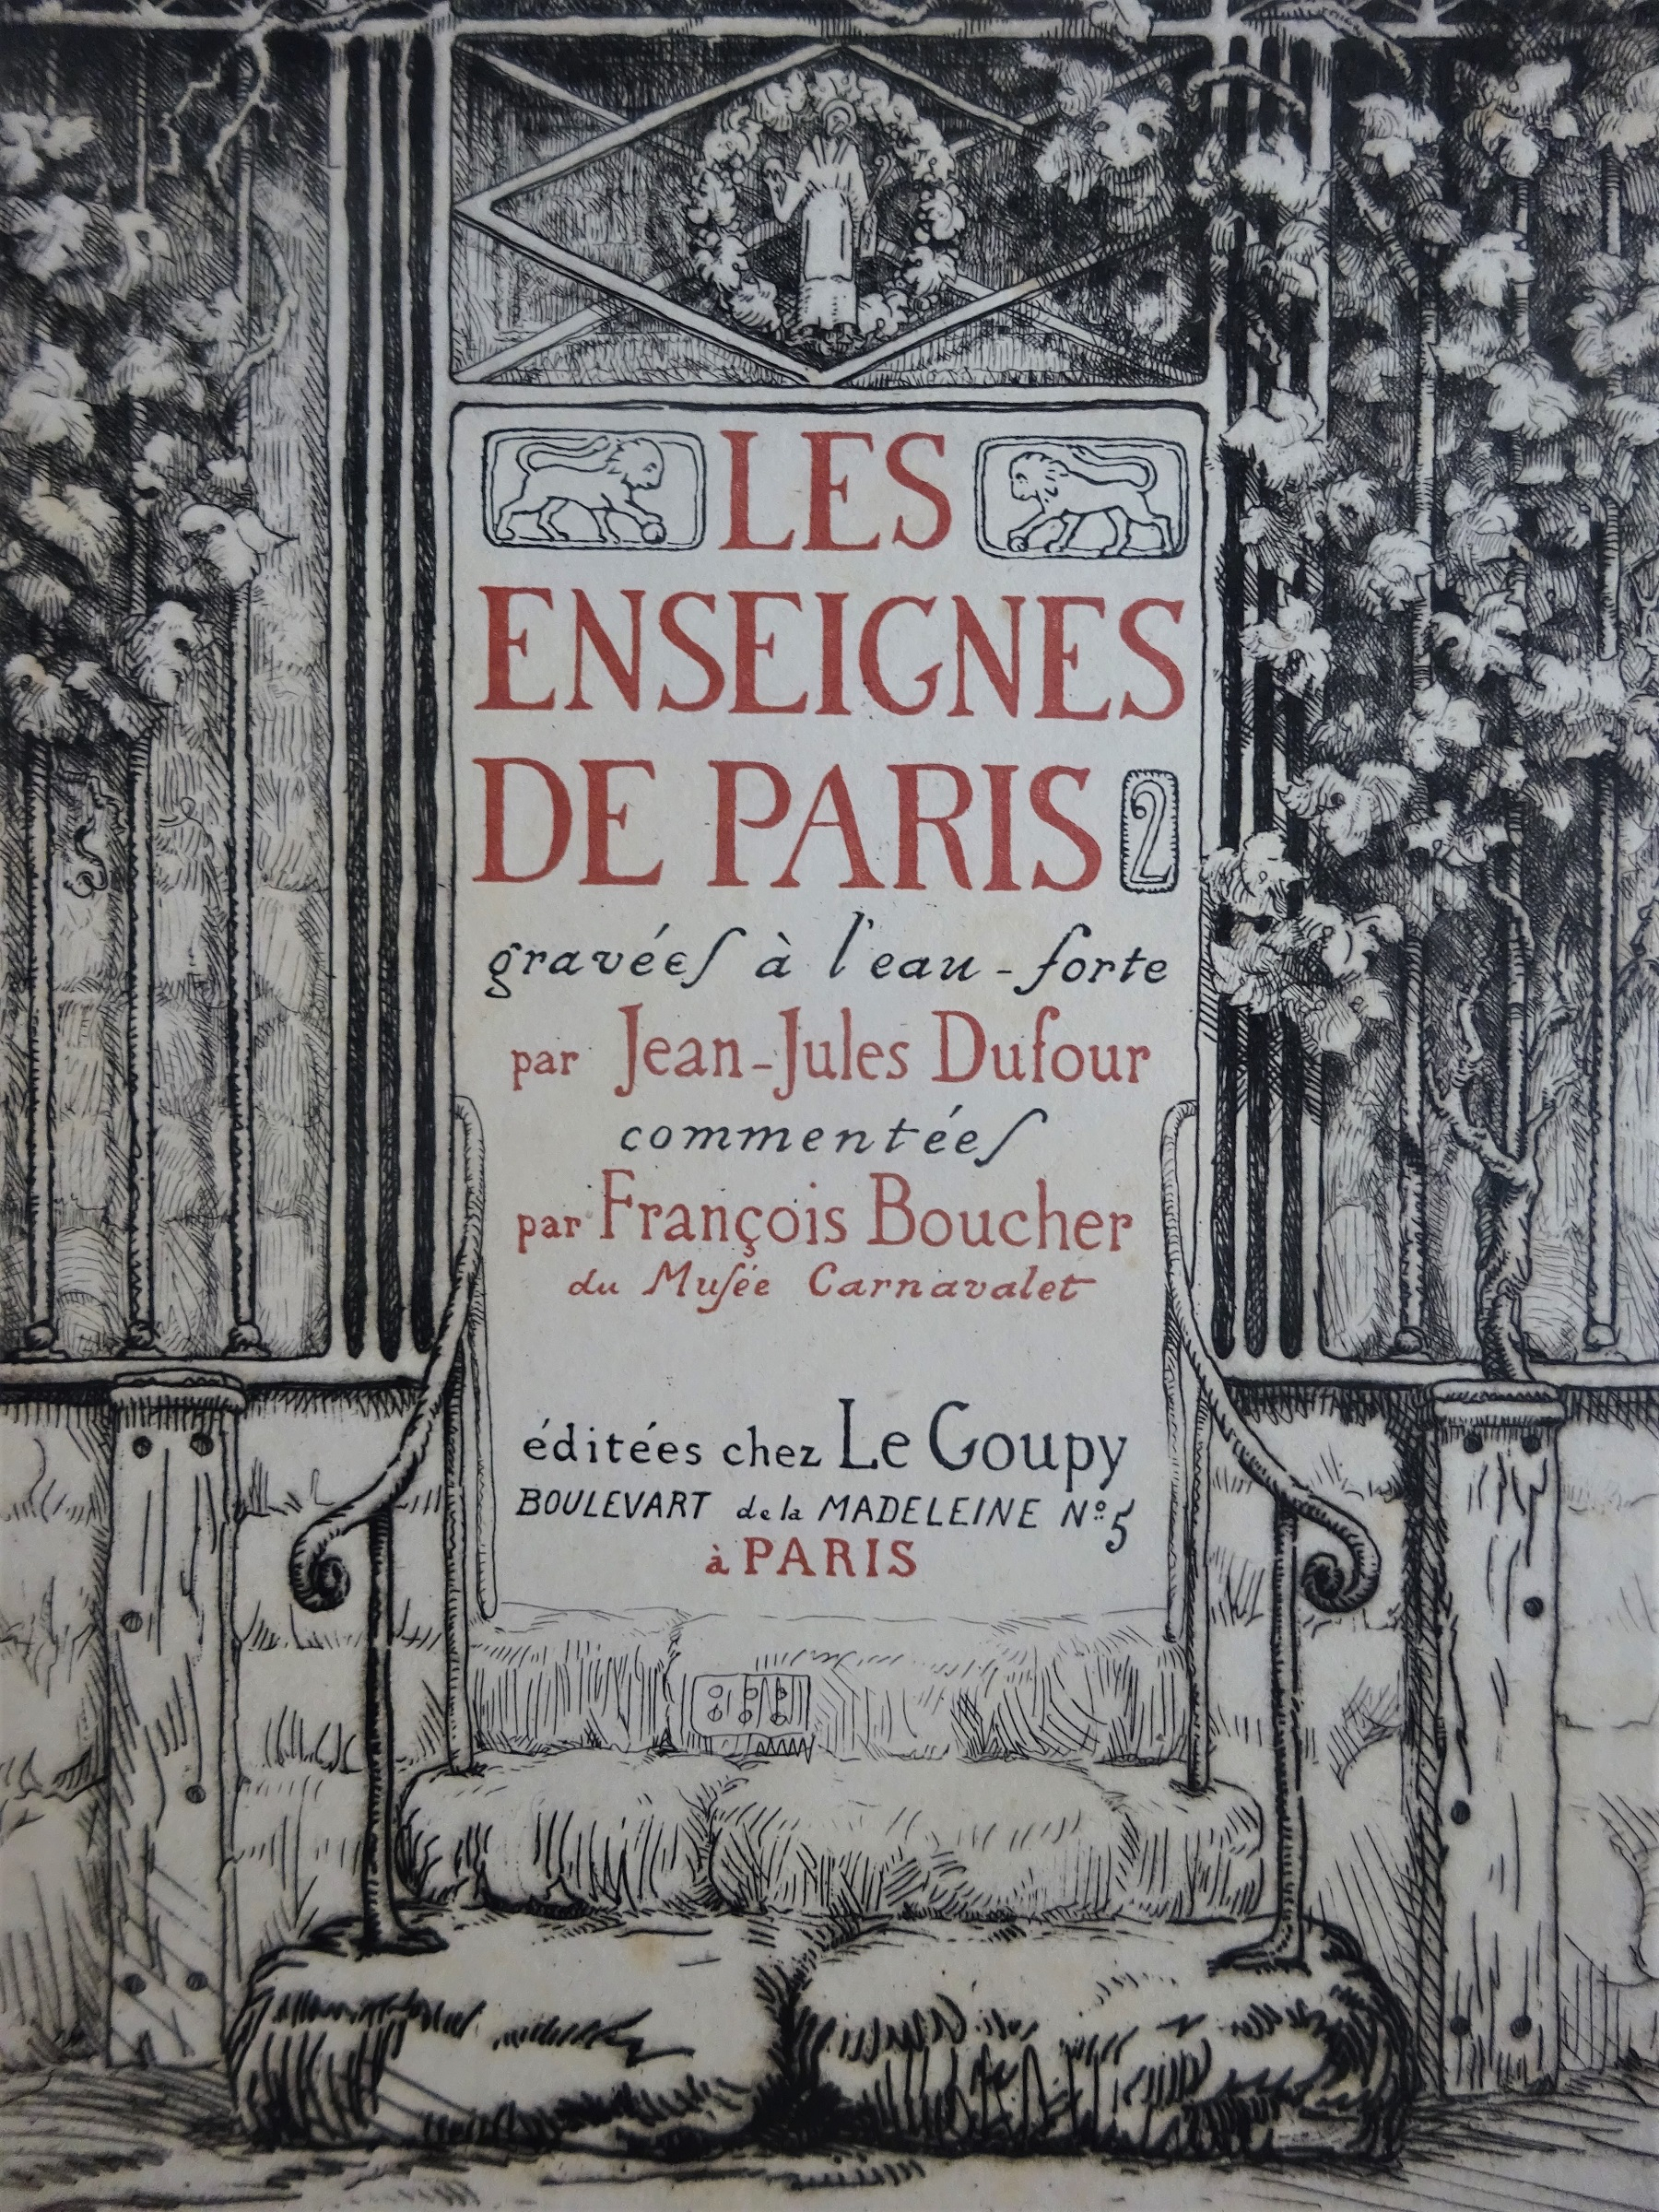 Les enseignes de Paris gravées par Jean-Jules Dufour